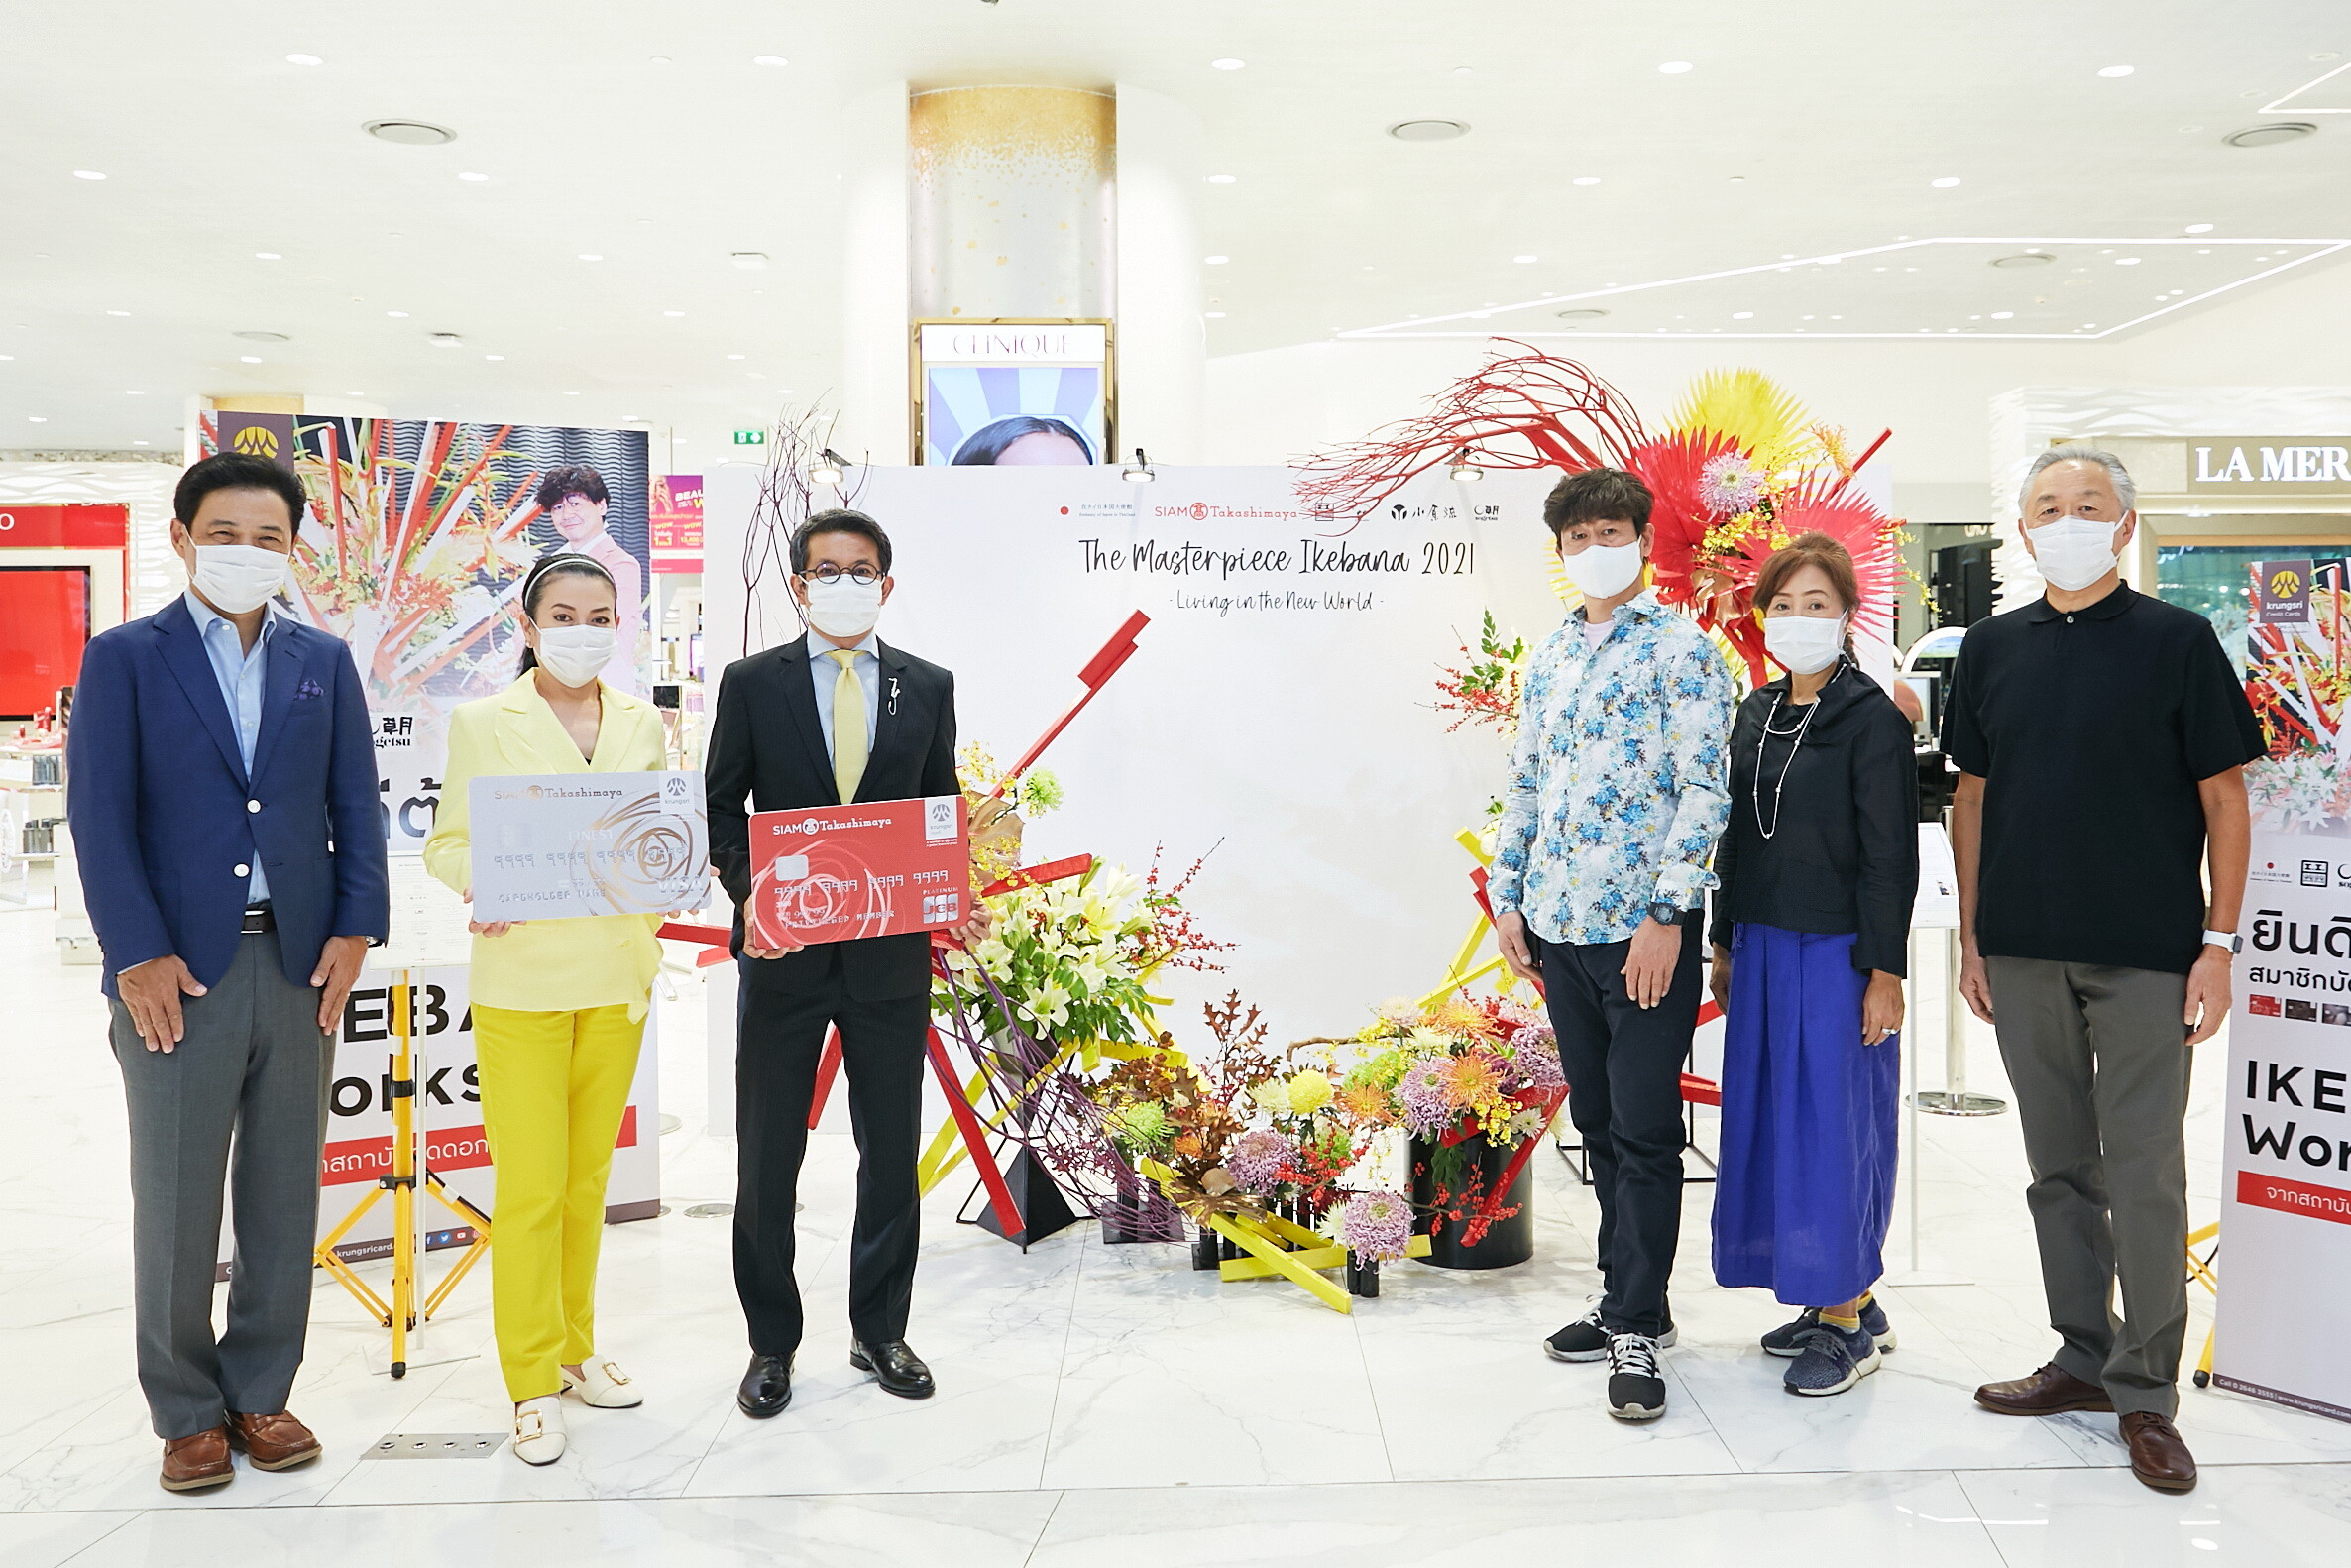 บัตรเครดิต กรุงศรี ร่วมกับ ห้างสรรพสินค้าสยาม ทาคาชิมายะ จัดกิจกรรม 'Ikebana Workshop by KCC' ชวนลูกค้าคนพิเศษเรียนรู้ศิลปะการจัดดอกไม้อันเก่าแก่ของญี่ปุ่น